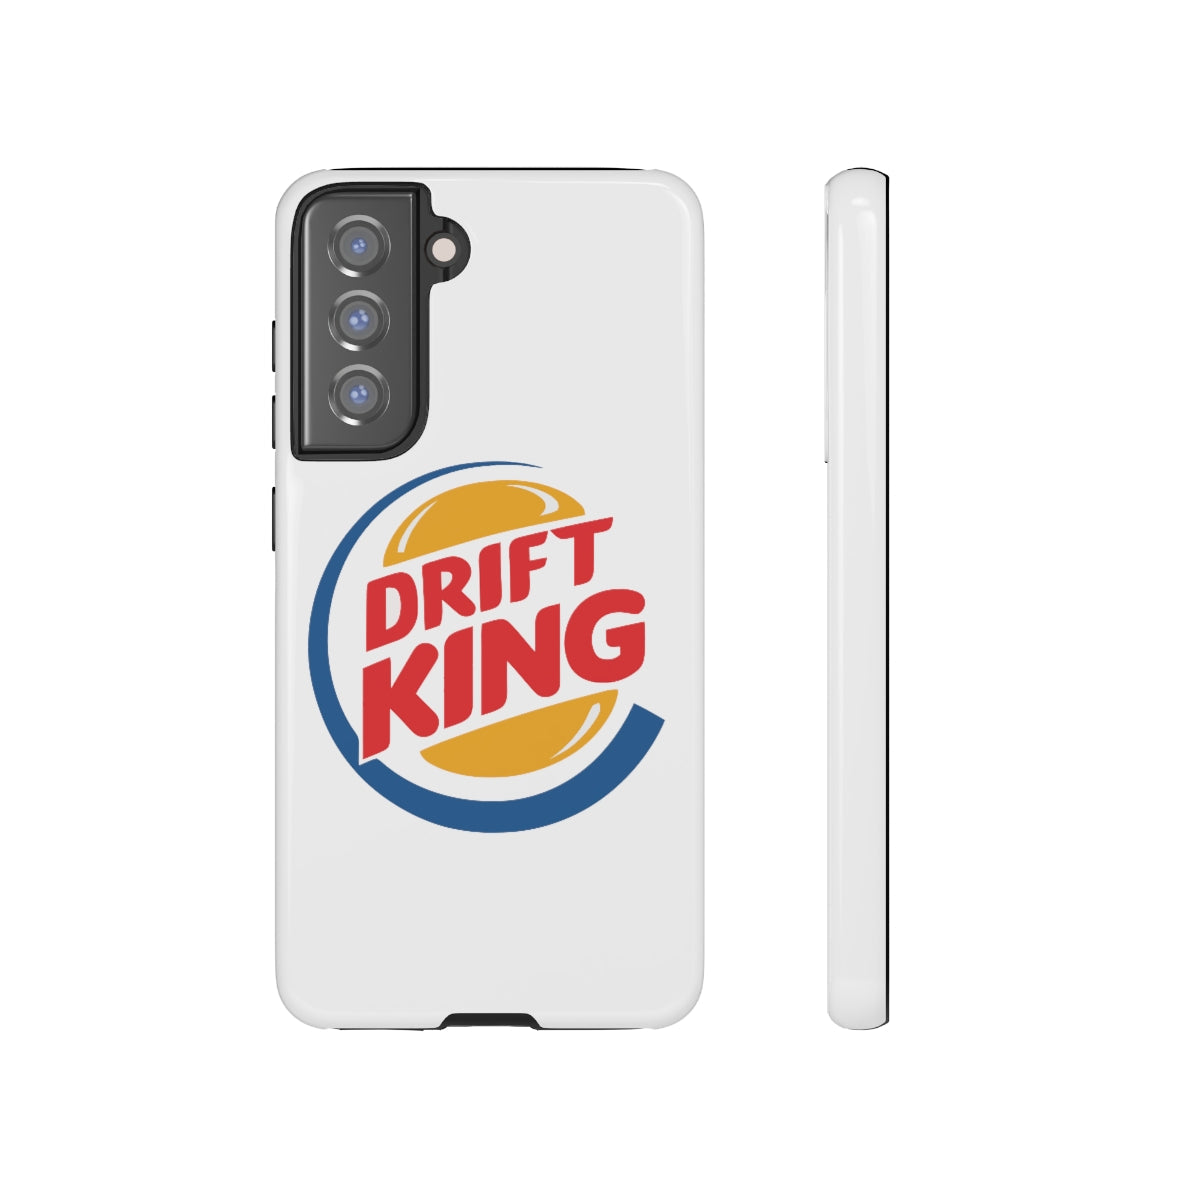 Drift King - Car Phone Case - Samsung Galaxy S21 FE